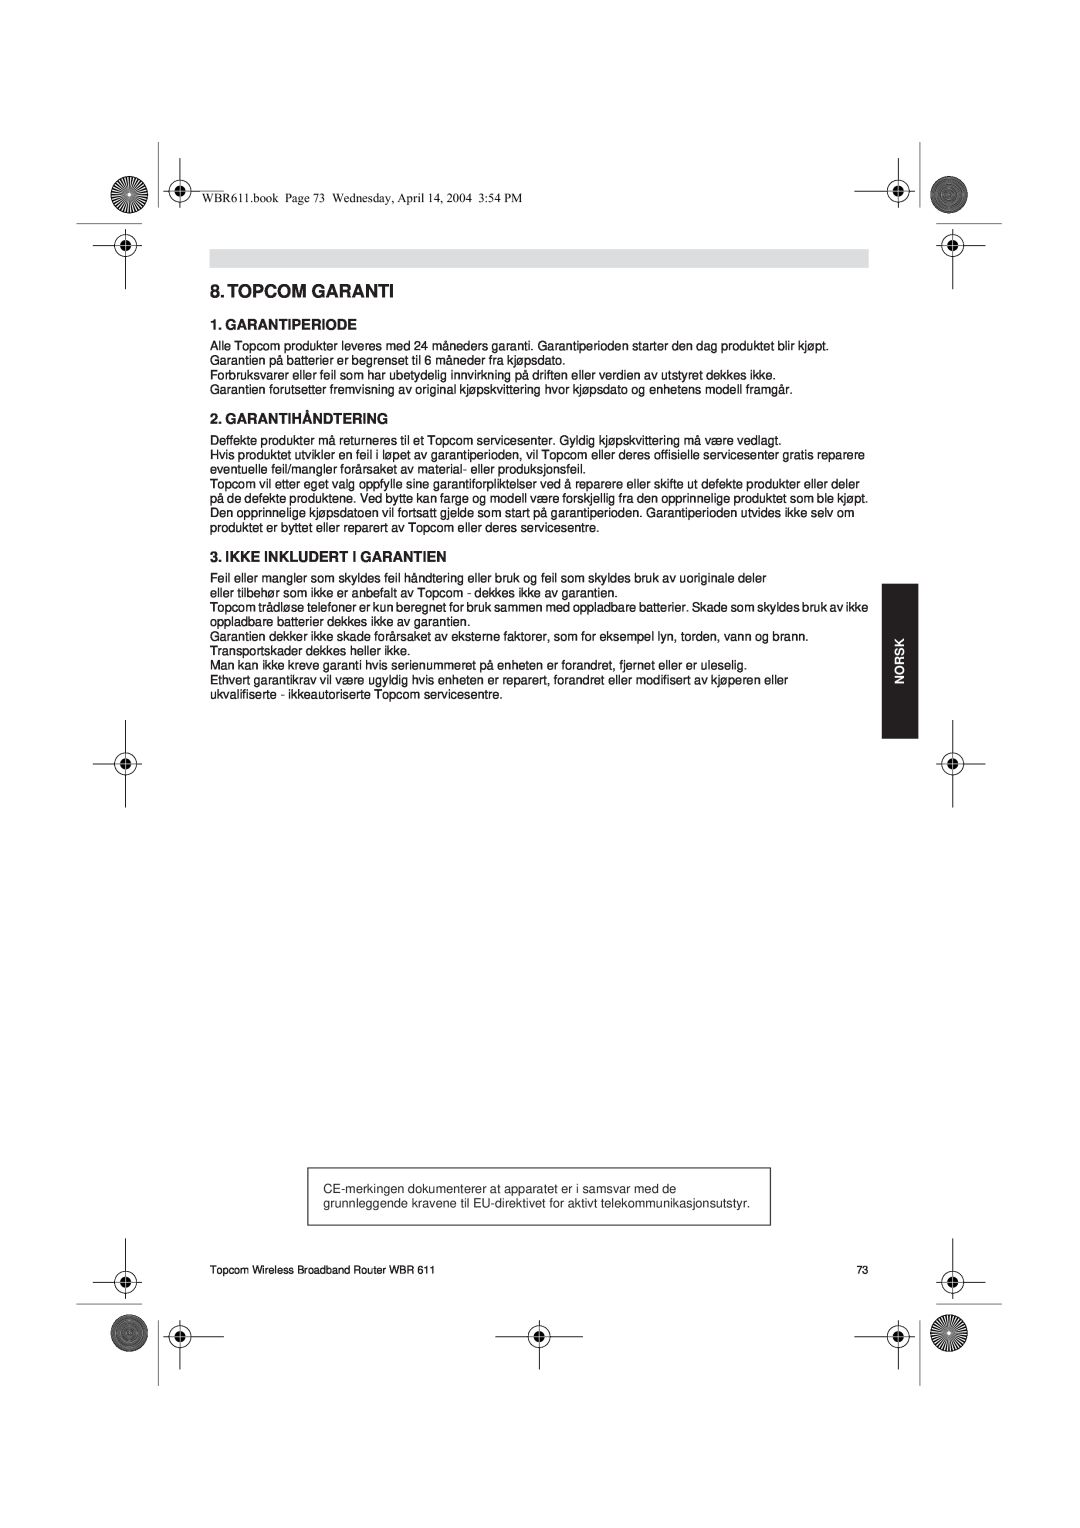 Topcom WBR 611 manual do utilizador Topcom Garanti, Garantiperiode, Garantihåndtering, Ikke Inkludert I Garantien, Norsk 